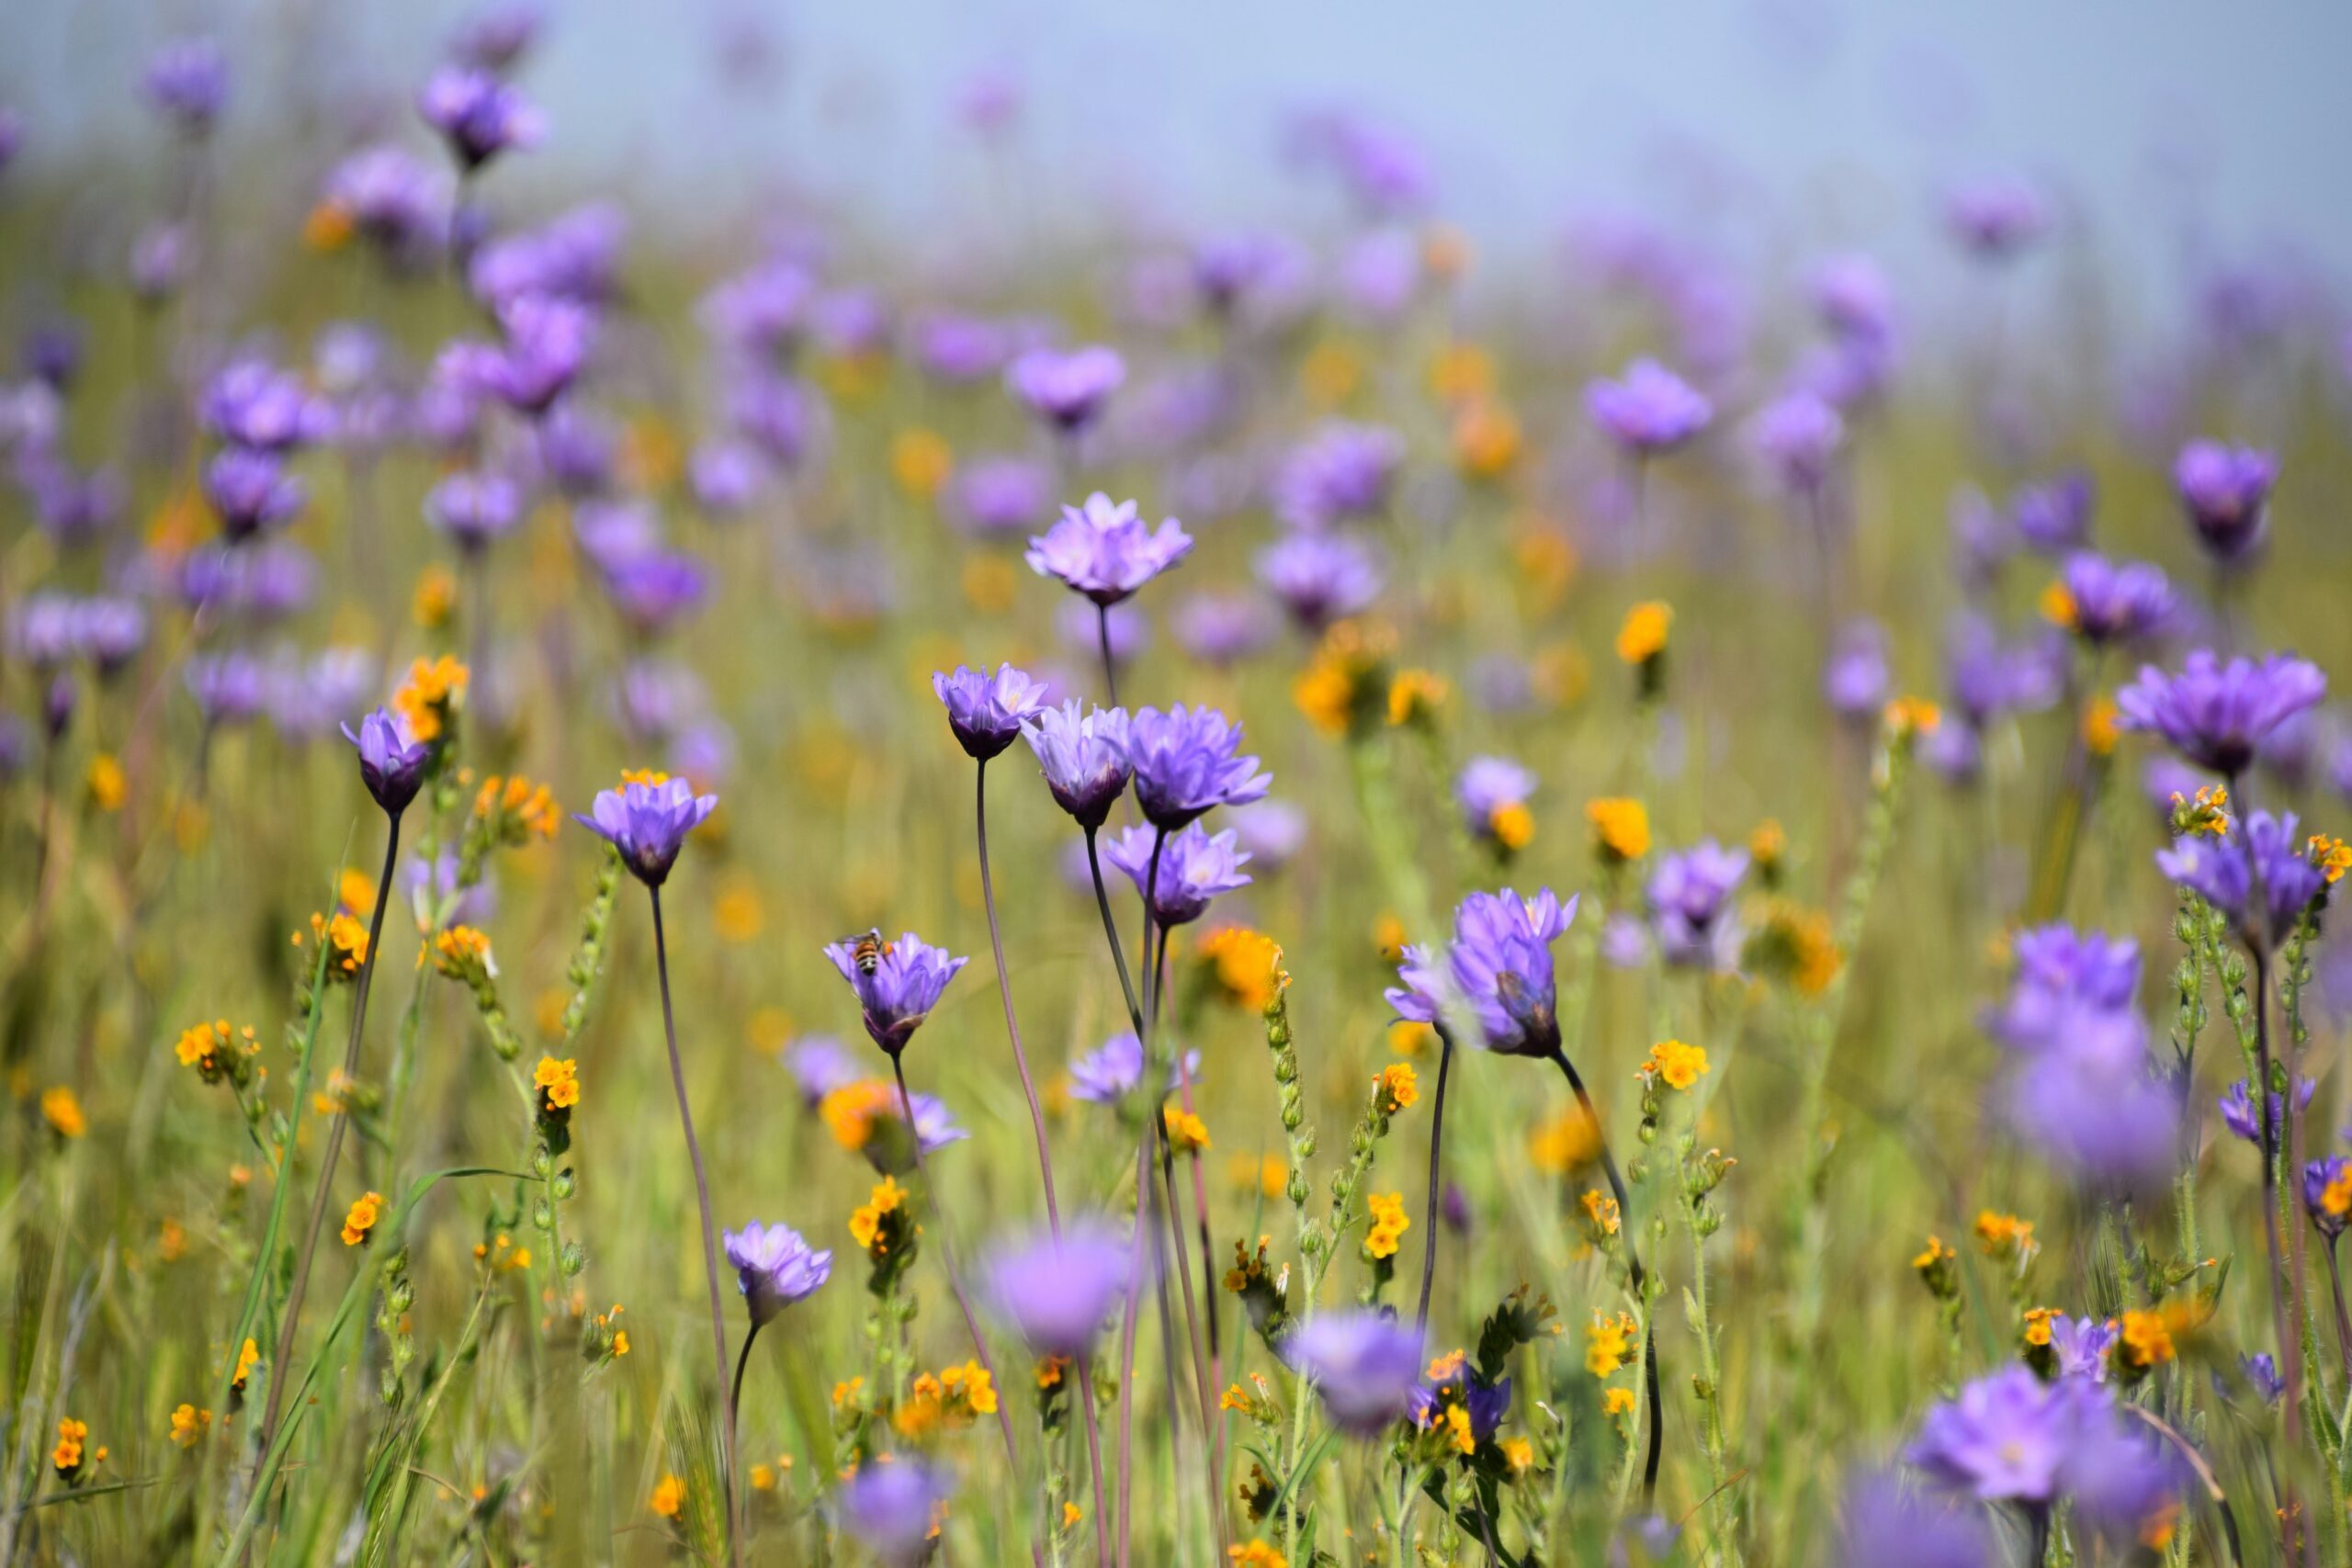 A field of purple summer flowers.